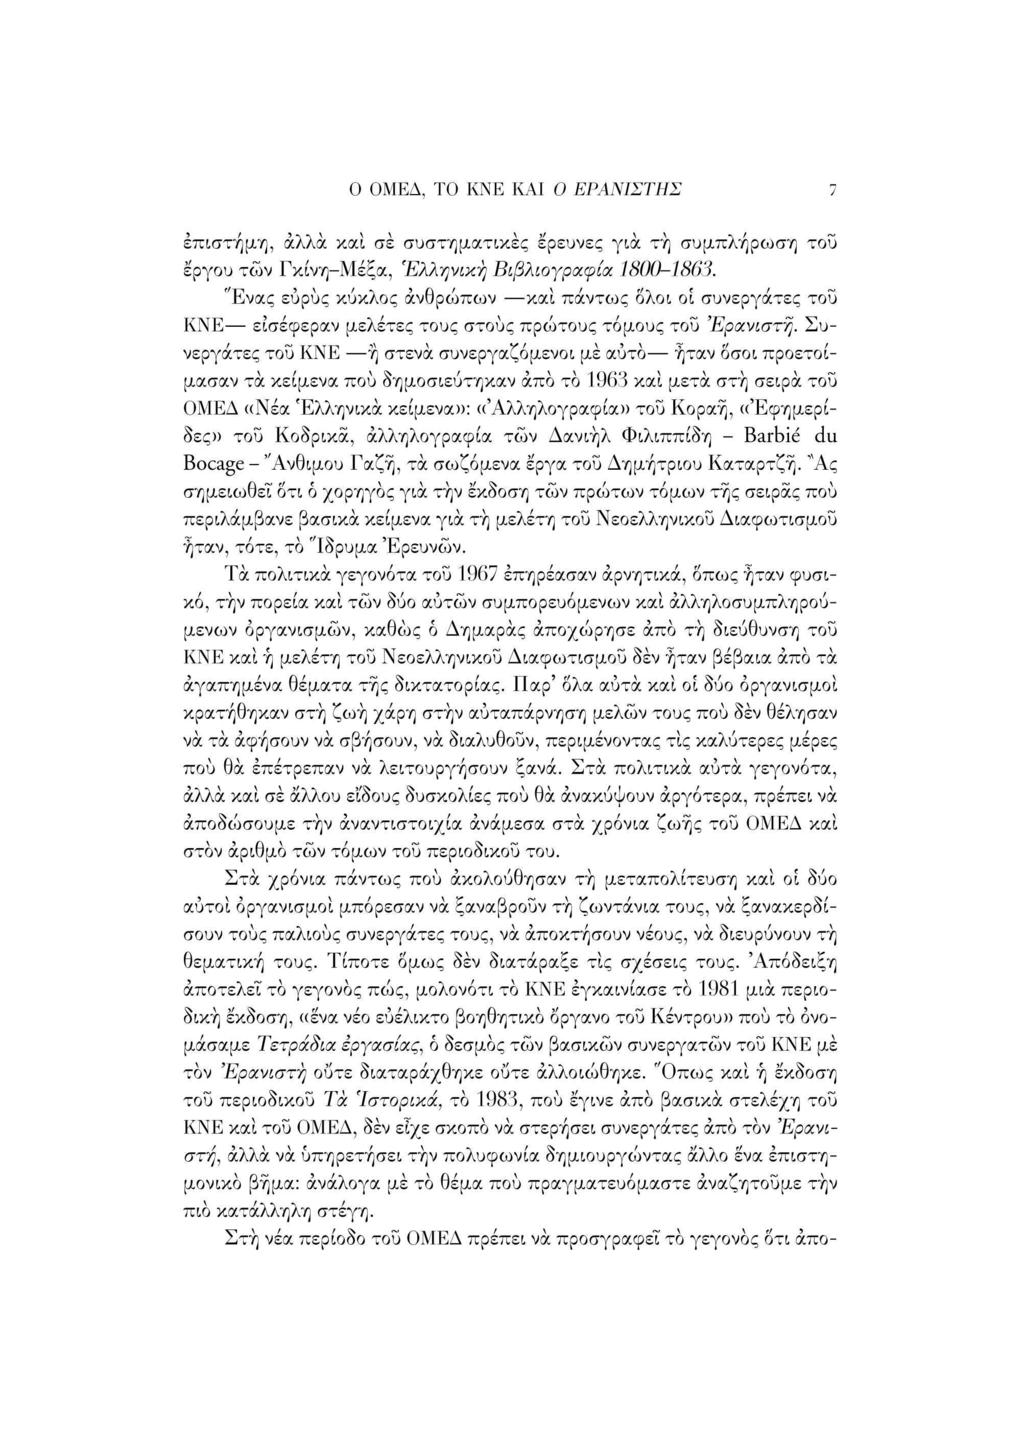 Ο ΟΜΕΔ, ΤΟ ΚΝΕ ΚΑΙ Ο ΕΡΑΝΙΣΤΗΣ 1 επιστήμη, άλλα και σε συστηματικές έρευνες για τη συμπλήρωση του έργου τών Γκίνη-Μέξα, Ελληνική Βιβλιογραφία 1800-1863.